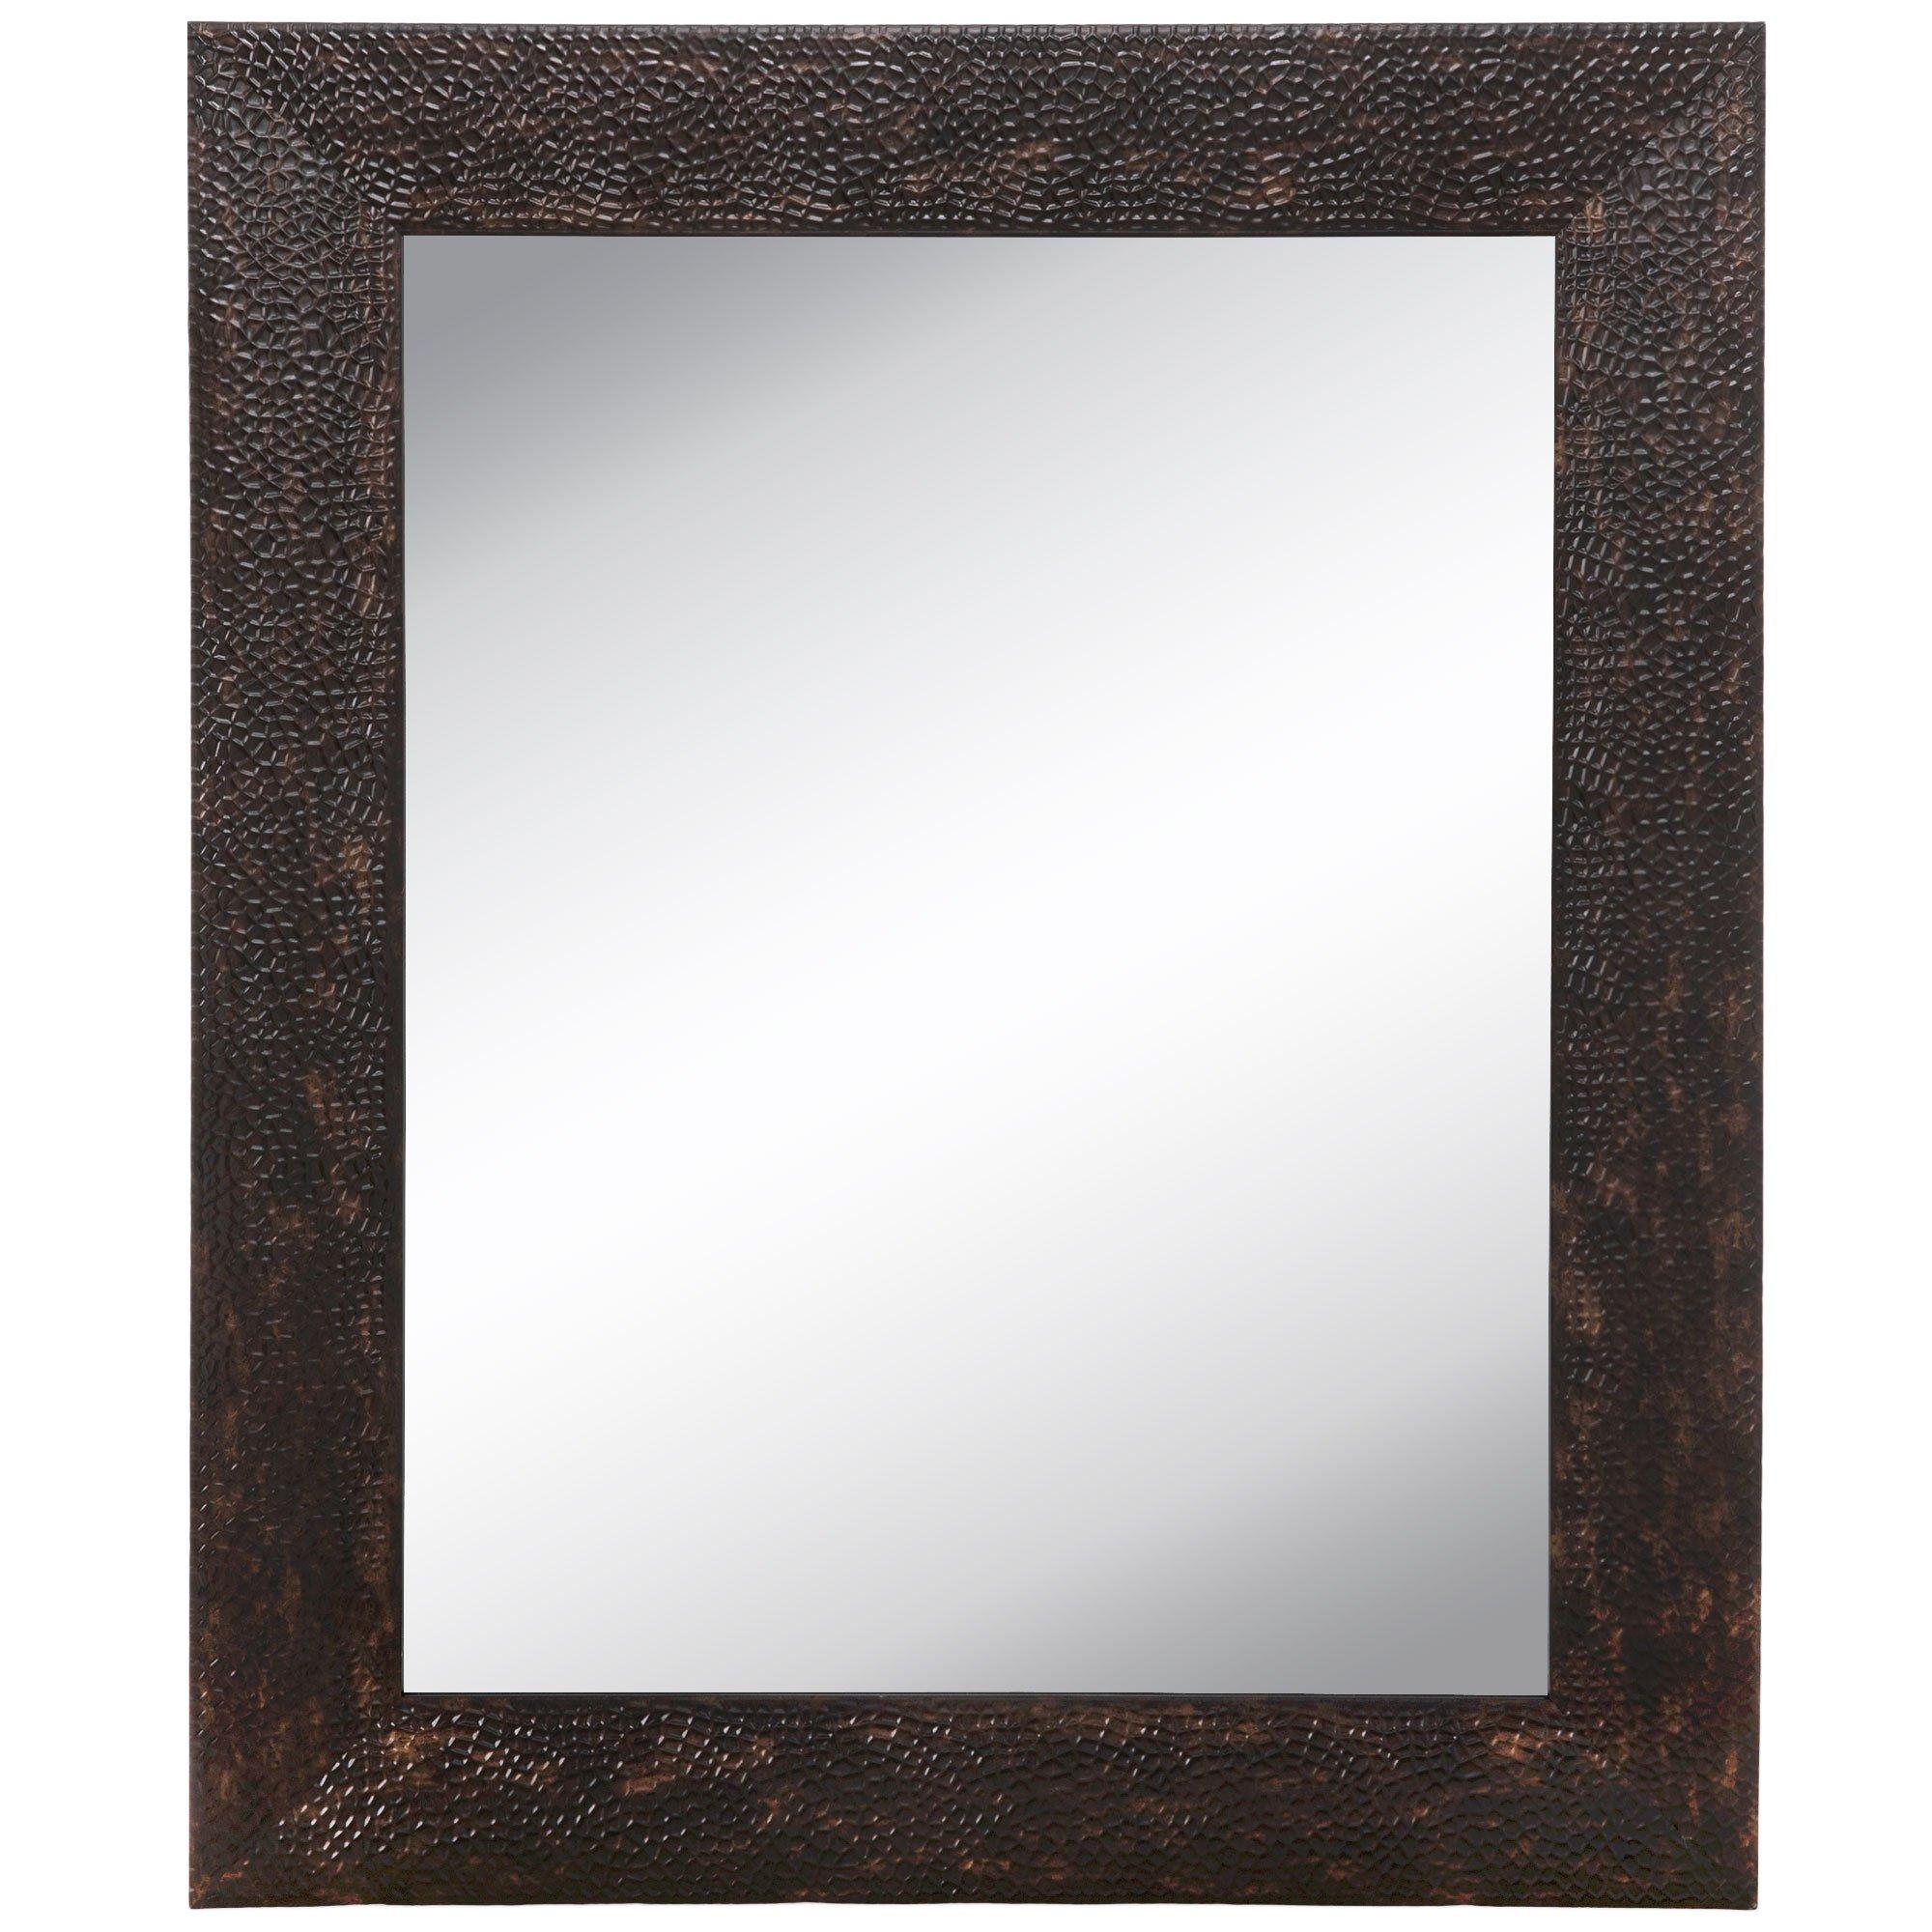 WMI12 - Vaquero Small Mirror - Bronze